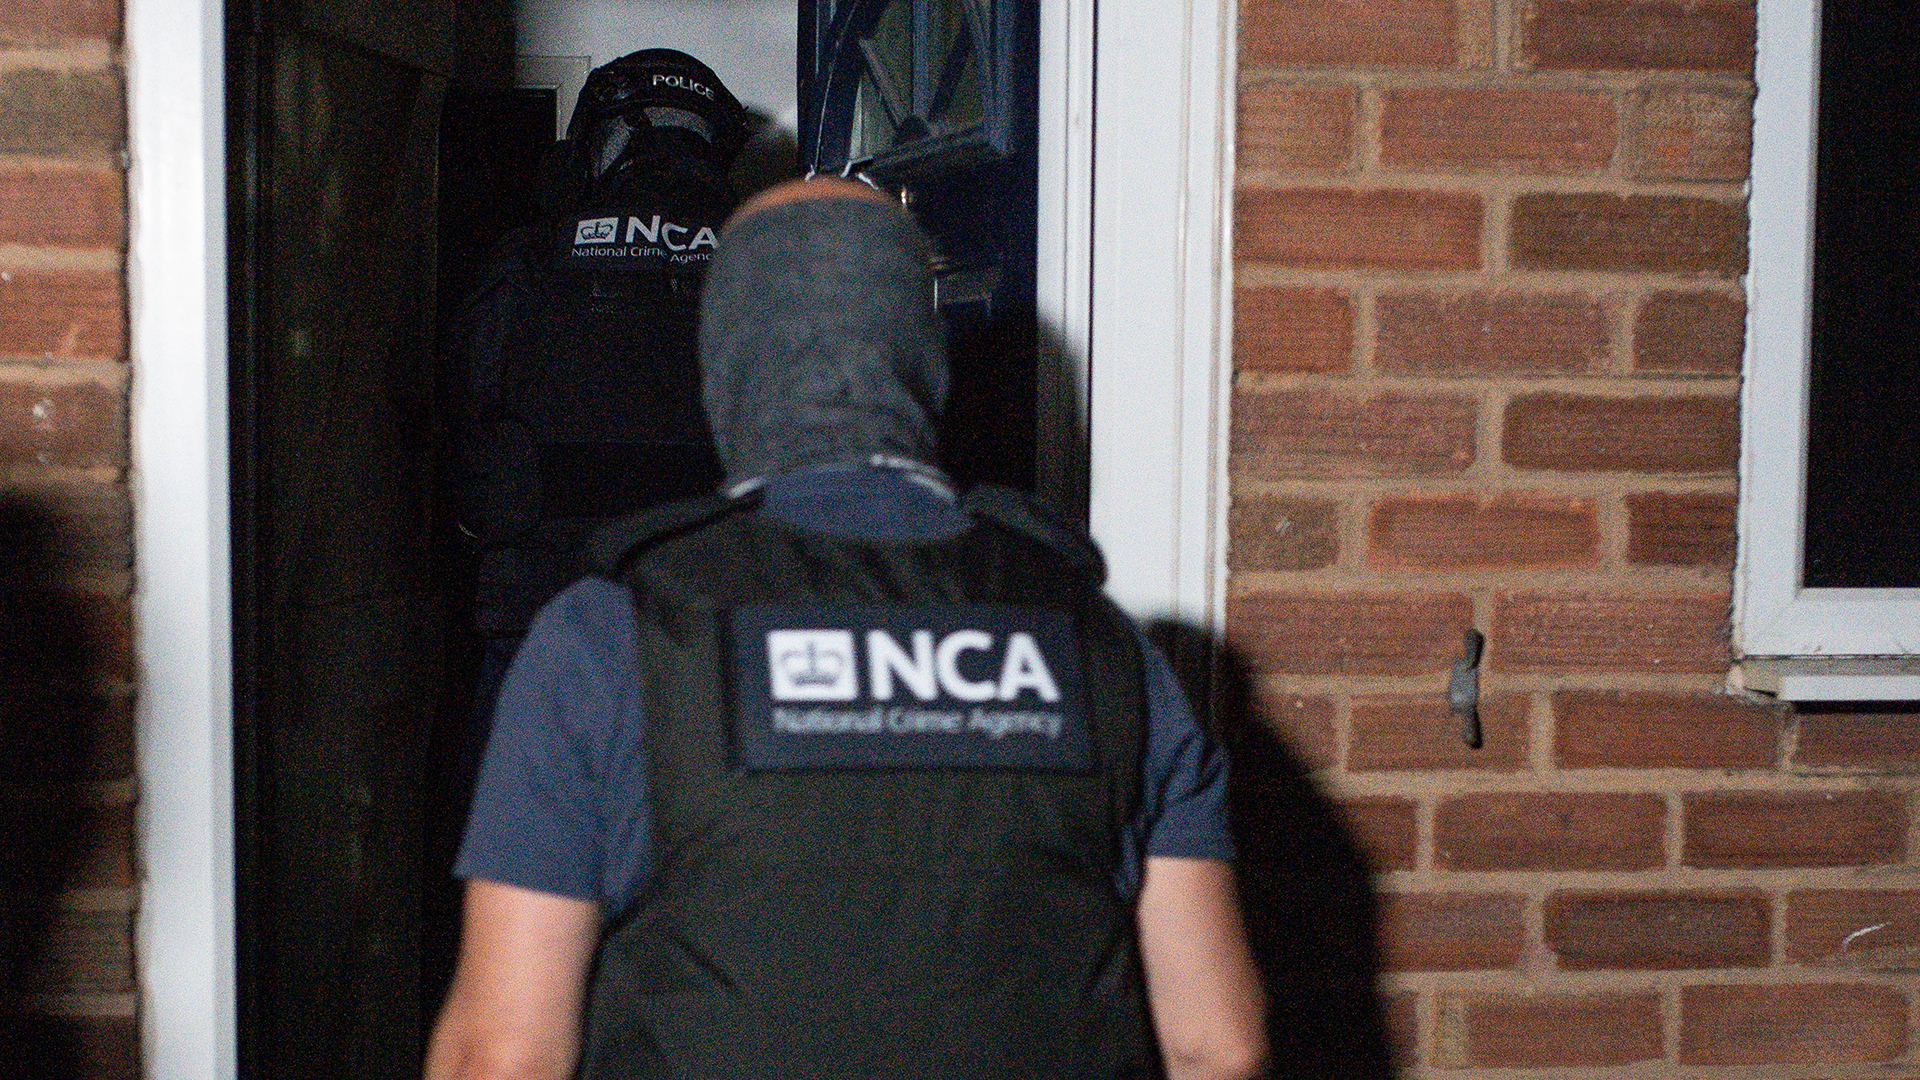 02.07.2020, Grossbritannien, Birmingham: Die National Crime Agency (NCA) und die Polizei beteiligen sich an einer Razzia, in der mehr als 100 mutmassliche Straftäter in mehreren Ländern festgenommen worden.